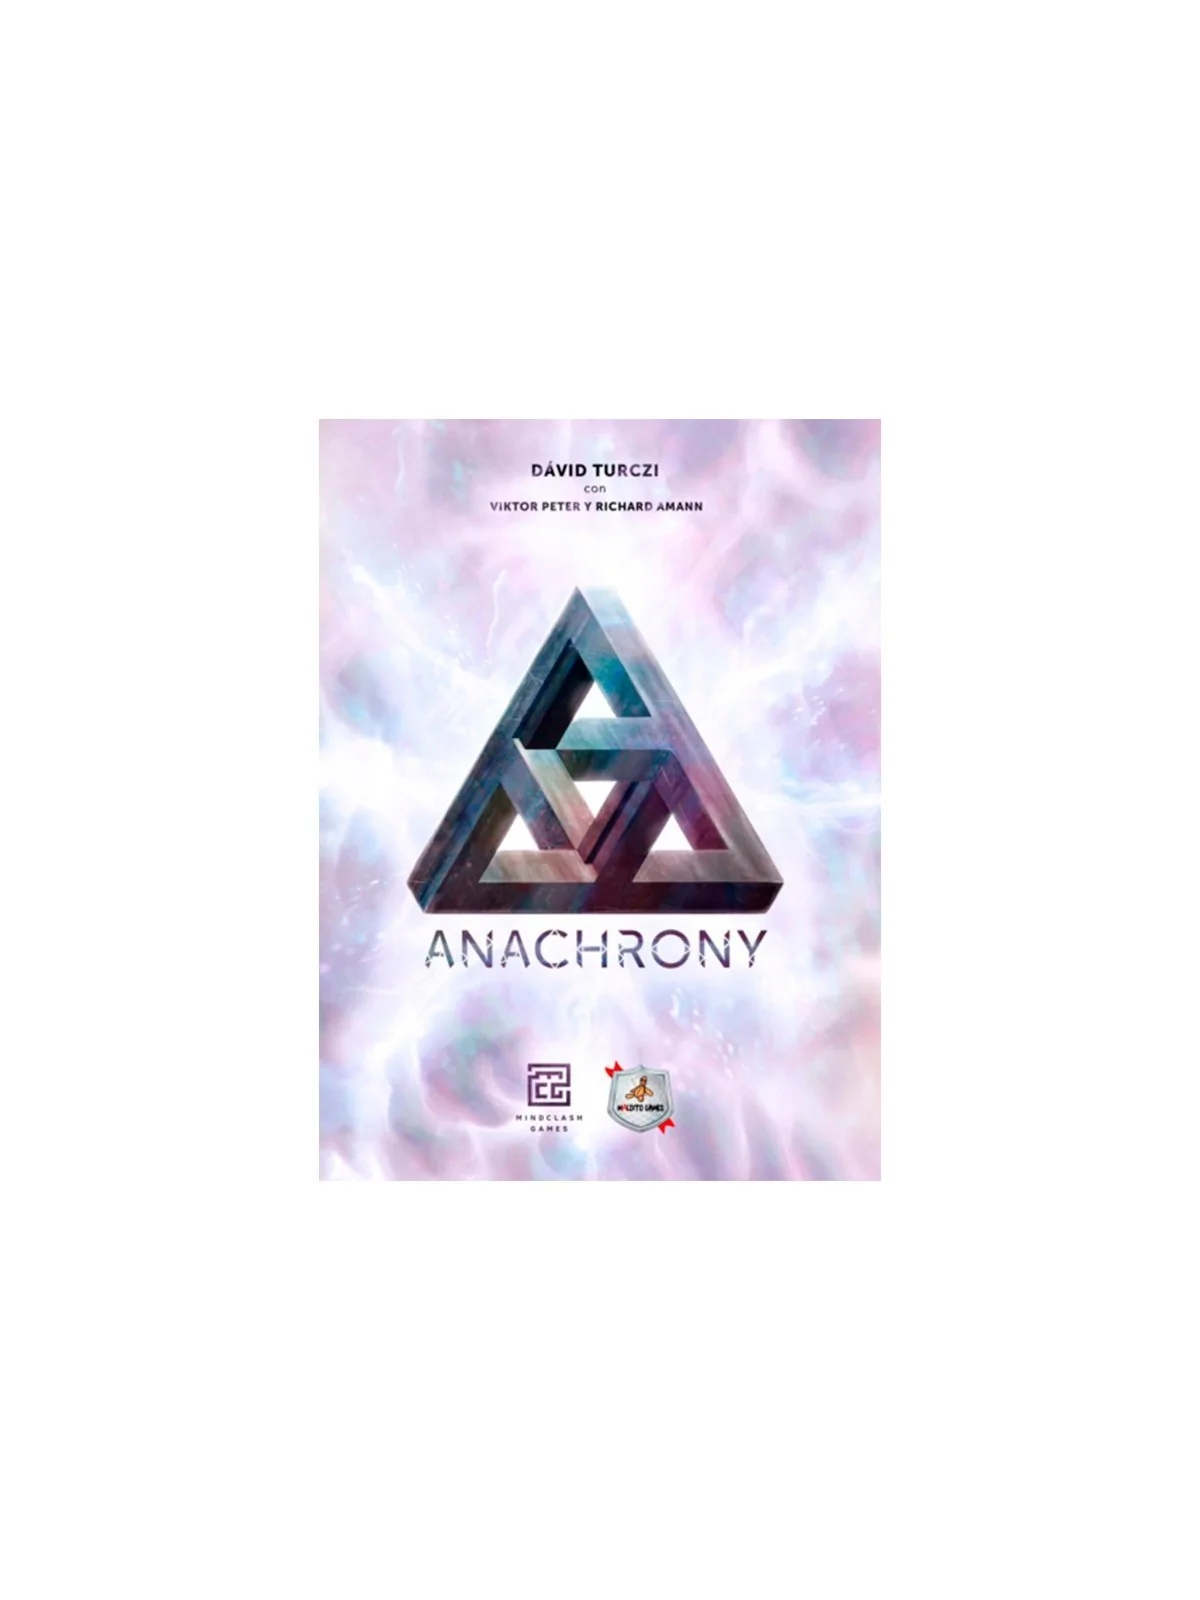 Comprar Anachrony barato al mejor precio 58,50 € de Maldito Games